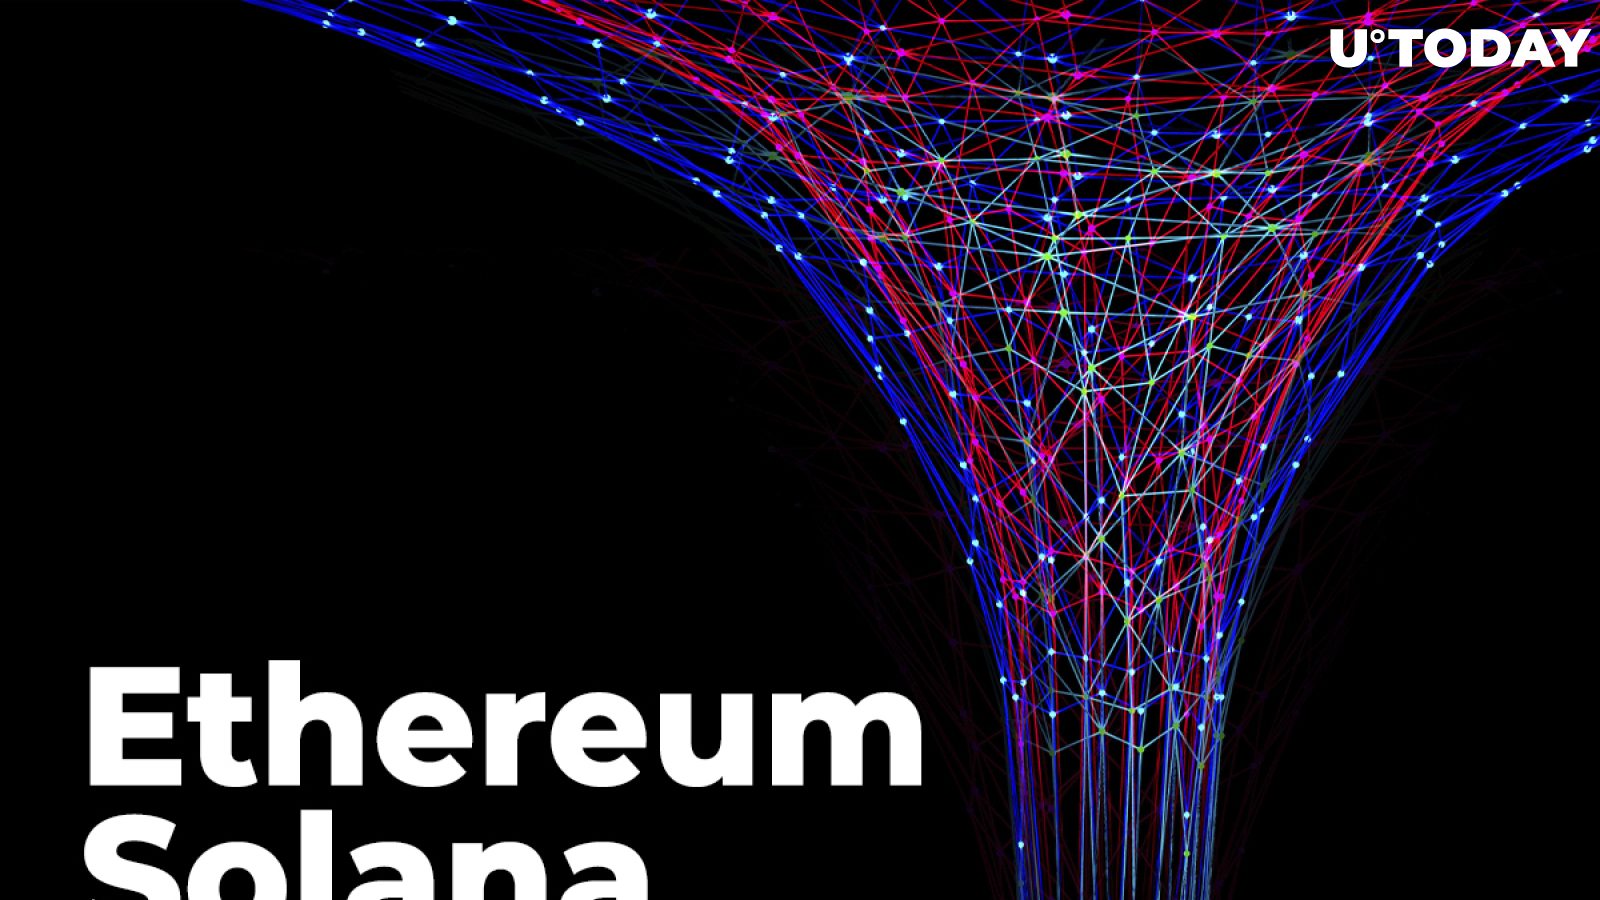 Ethereum-Solana Wormhole v2 Bridge Finally Goes Live